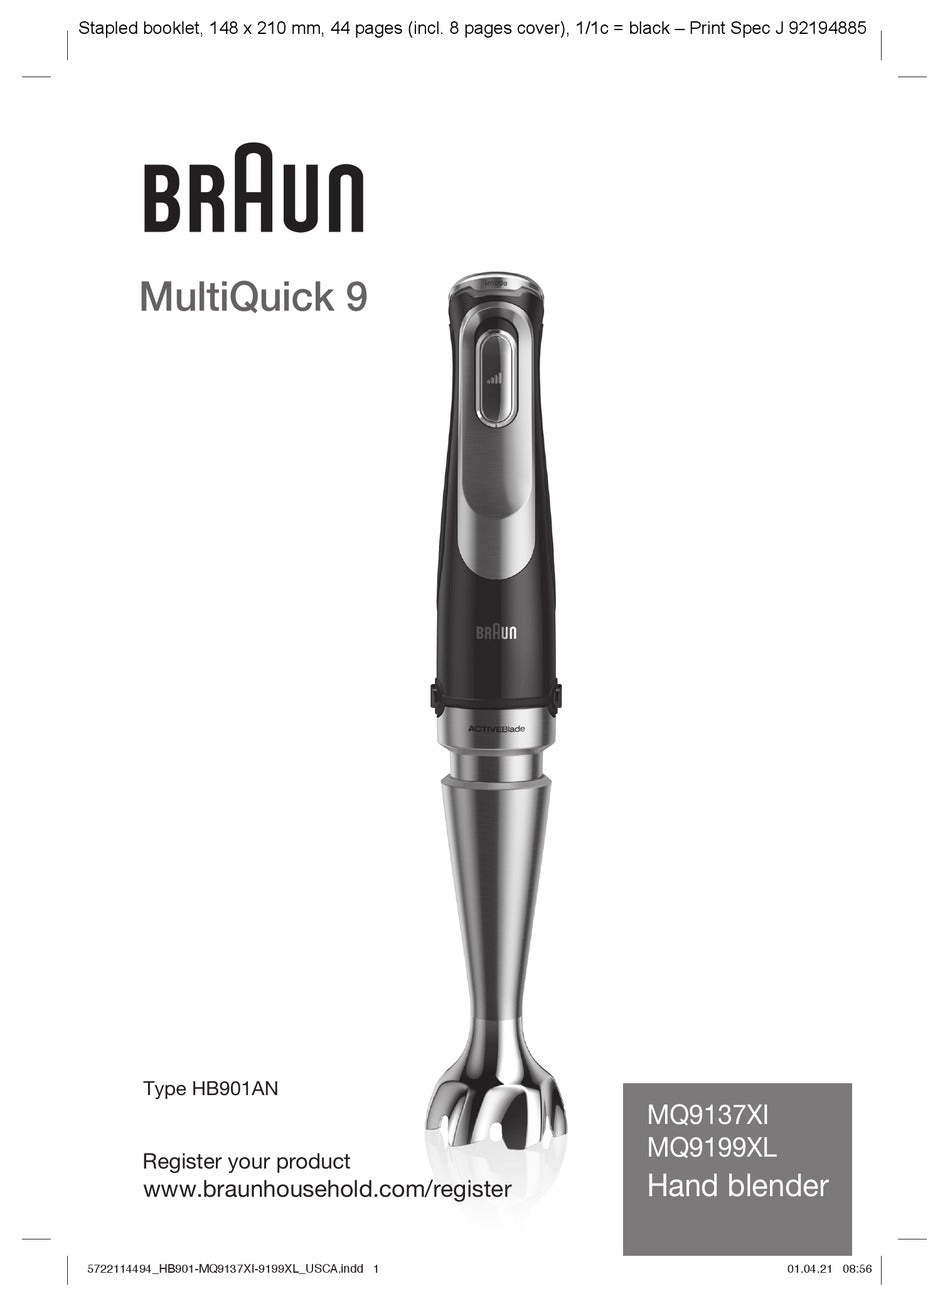 Braun Multiquick 9 SmartSpeed Hand Blender (MQ9199XL)